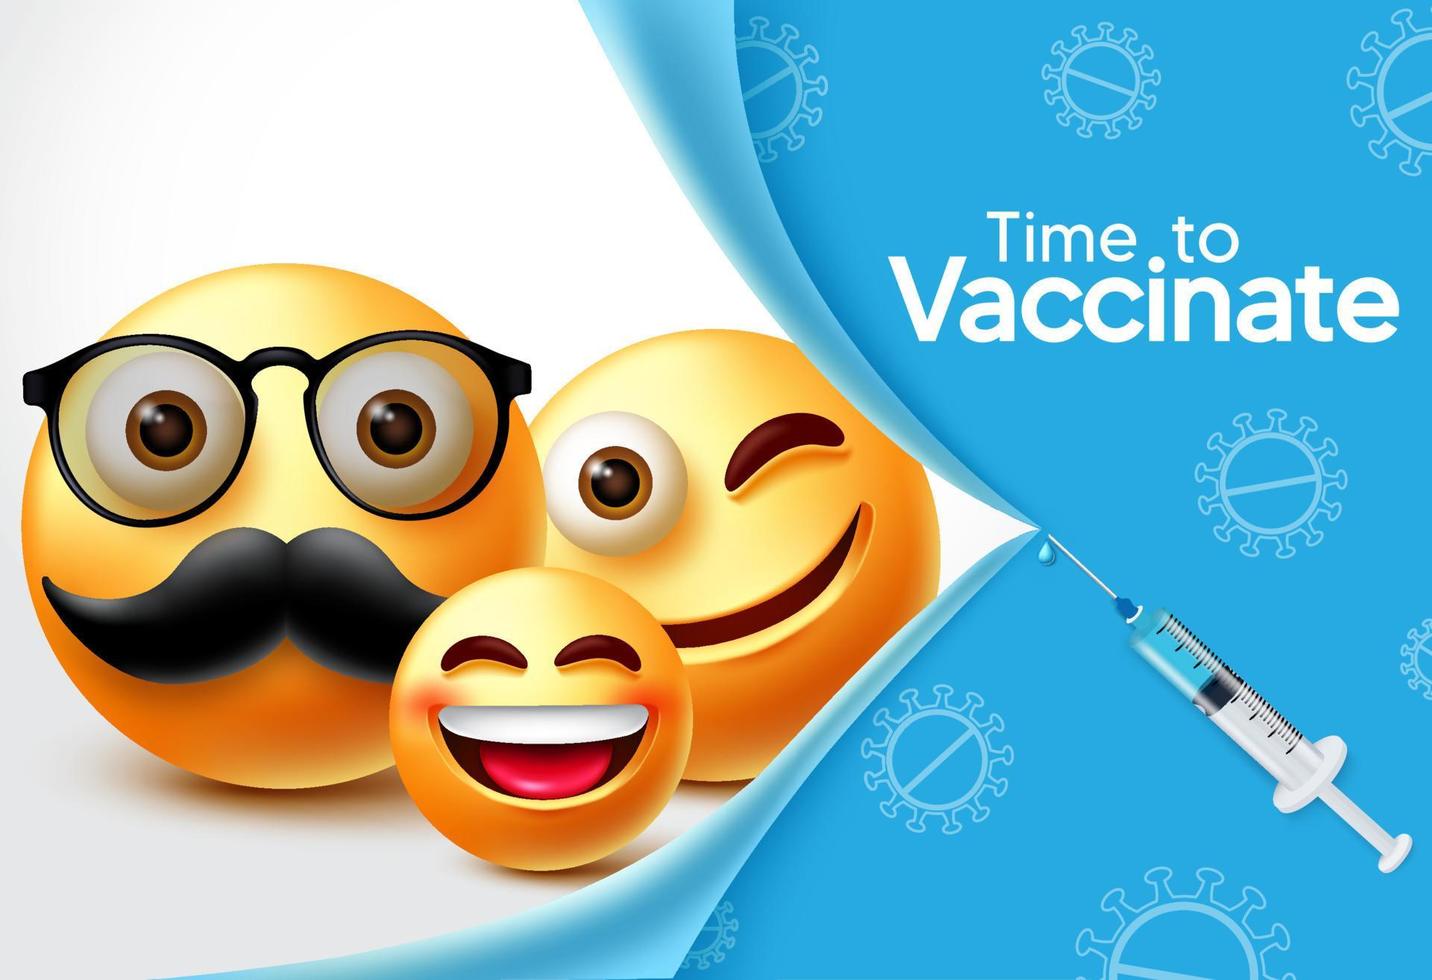 Diseño de banner de vector de vacuna de personajes emoji. Es hora de vacunar el texto con el carácter familiar de emojis 3d y el elemento de jeringa para el diseño de prevención y vacunación covid-19. ilustración vectorial